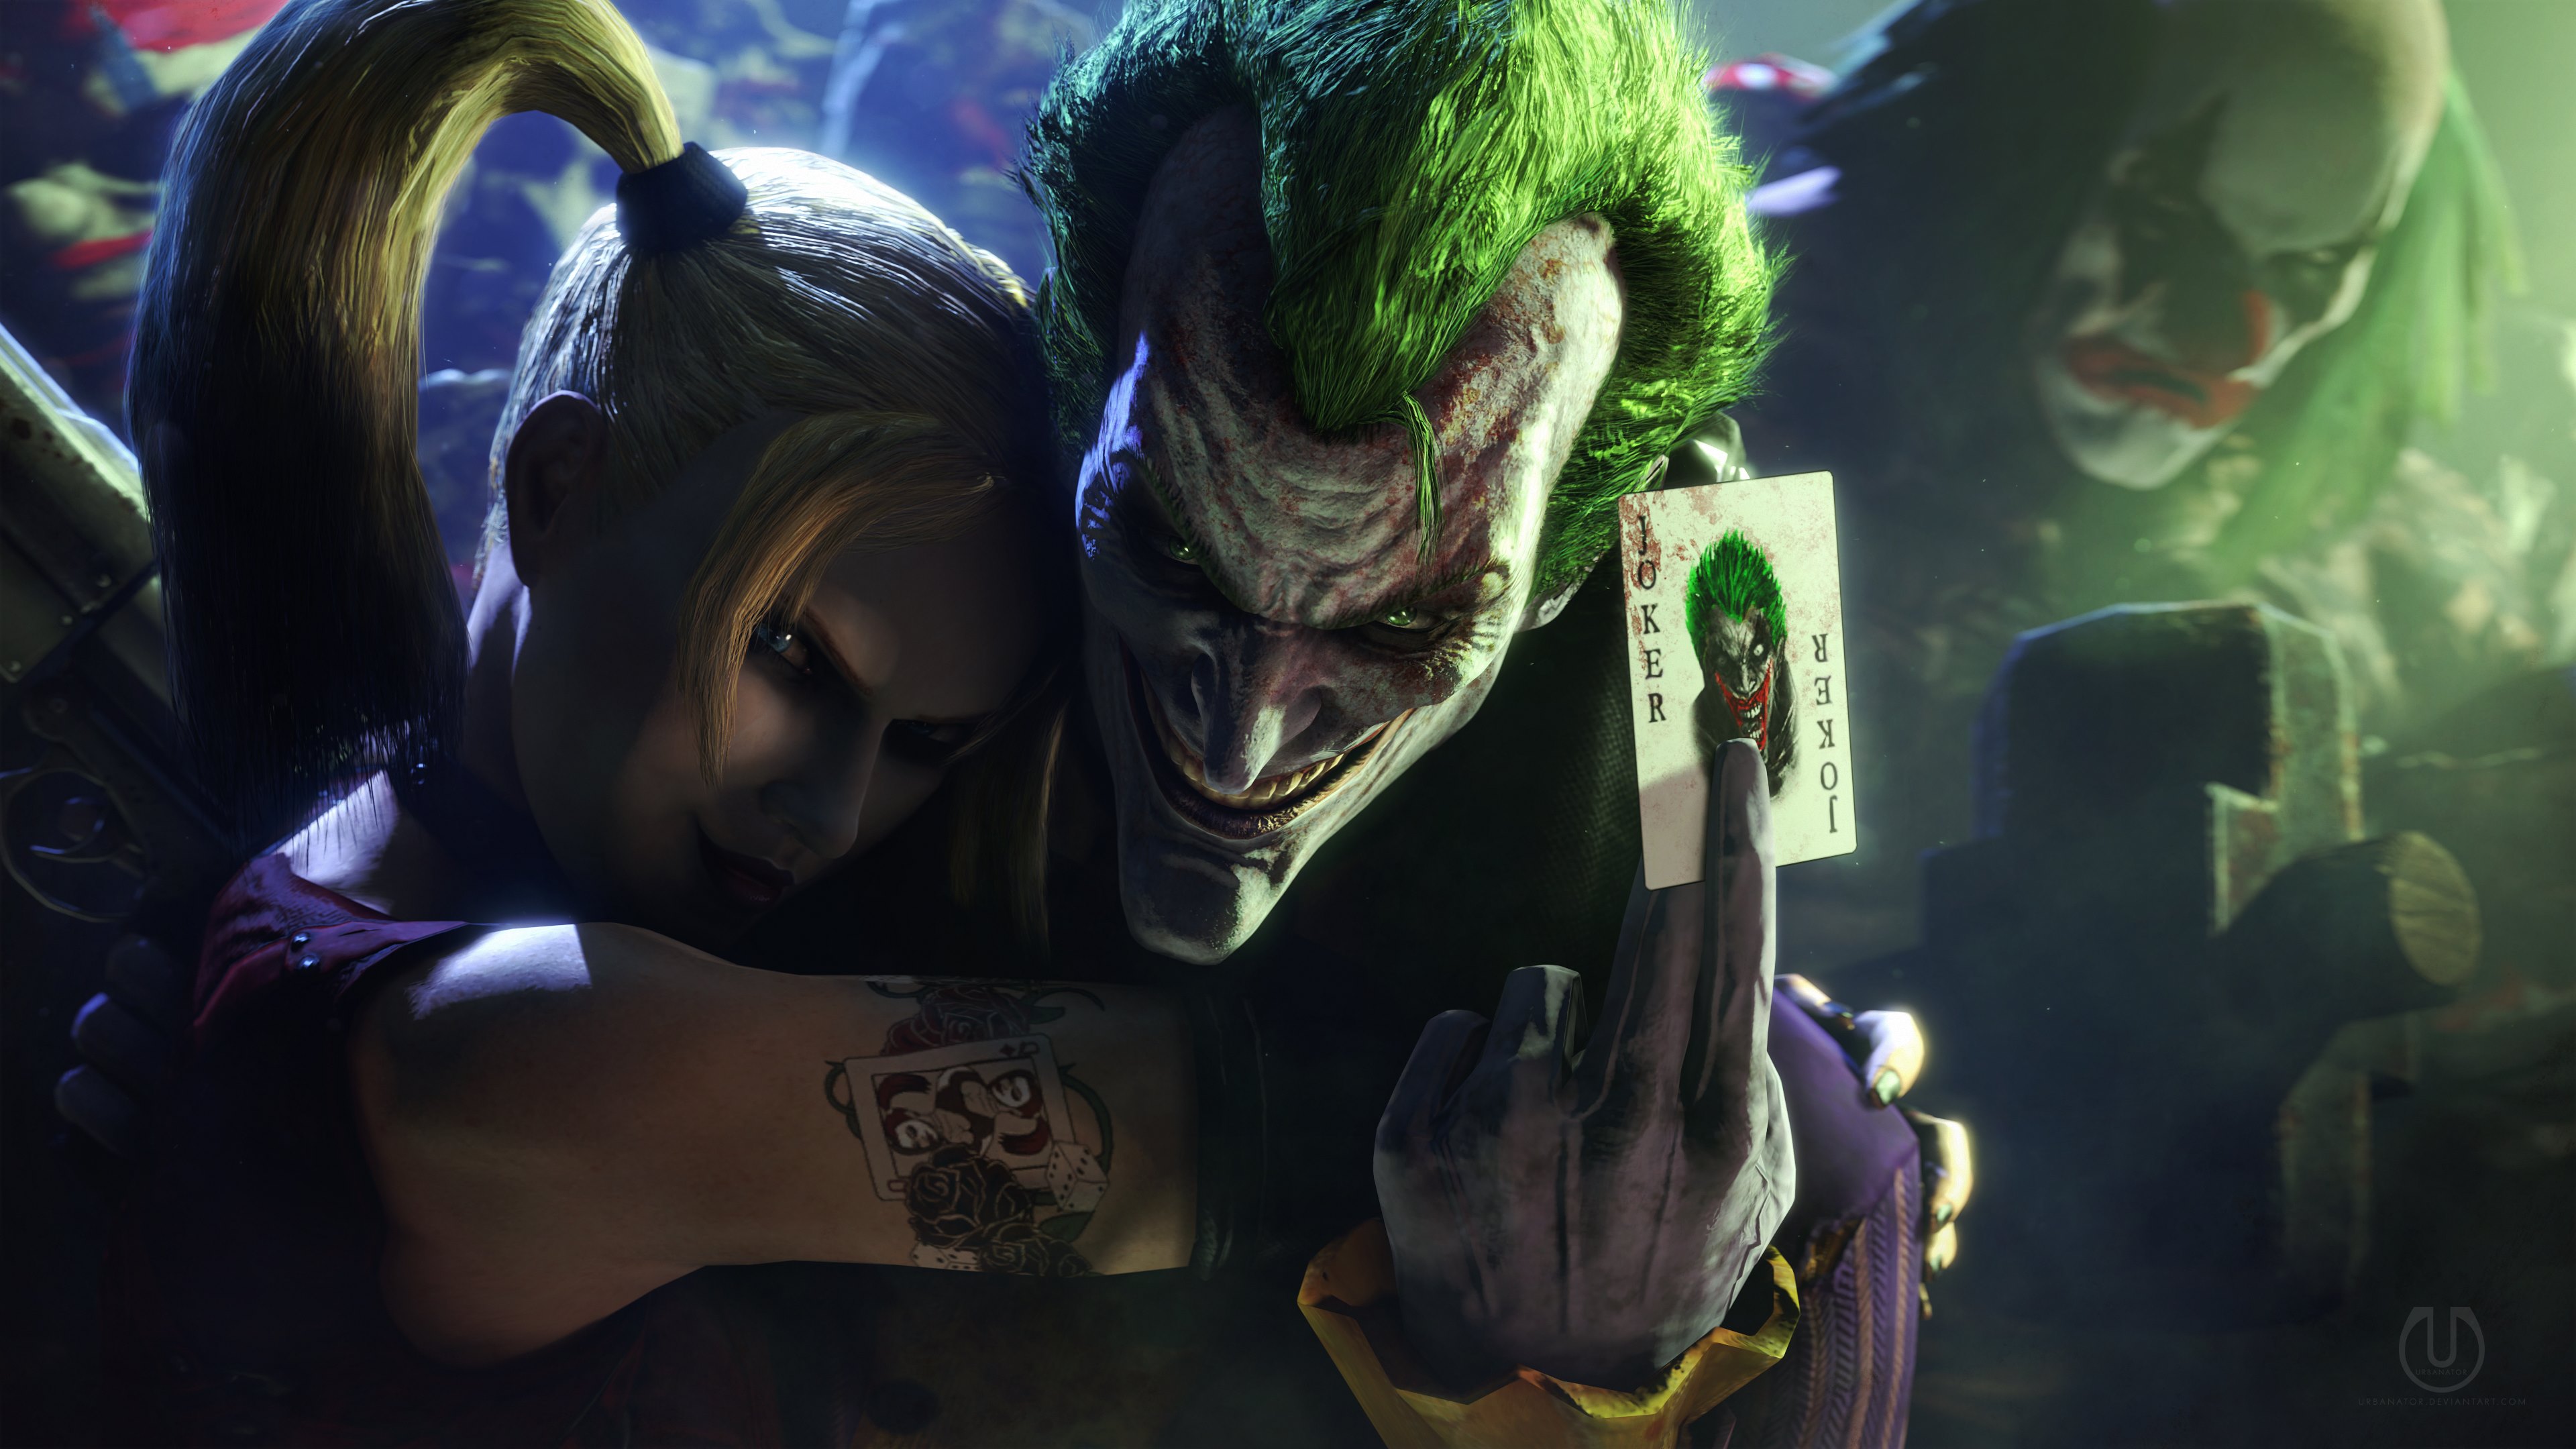 69+] Joker And Harley Quinn Wallpaper - WallpaperSafari